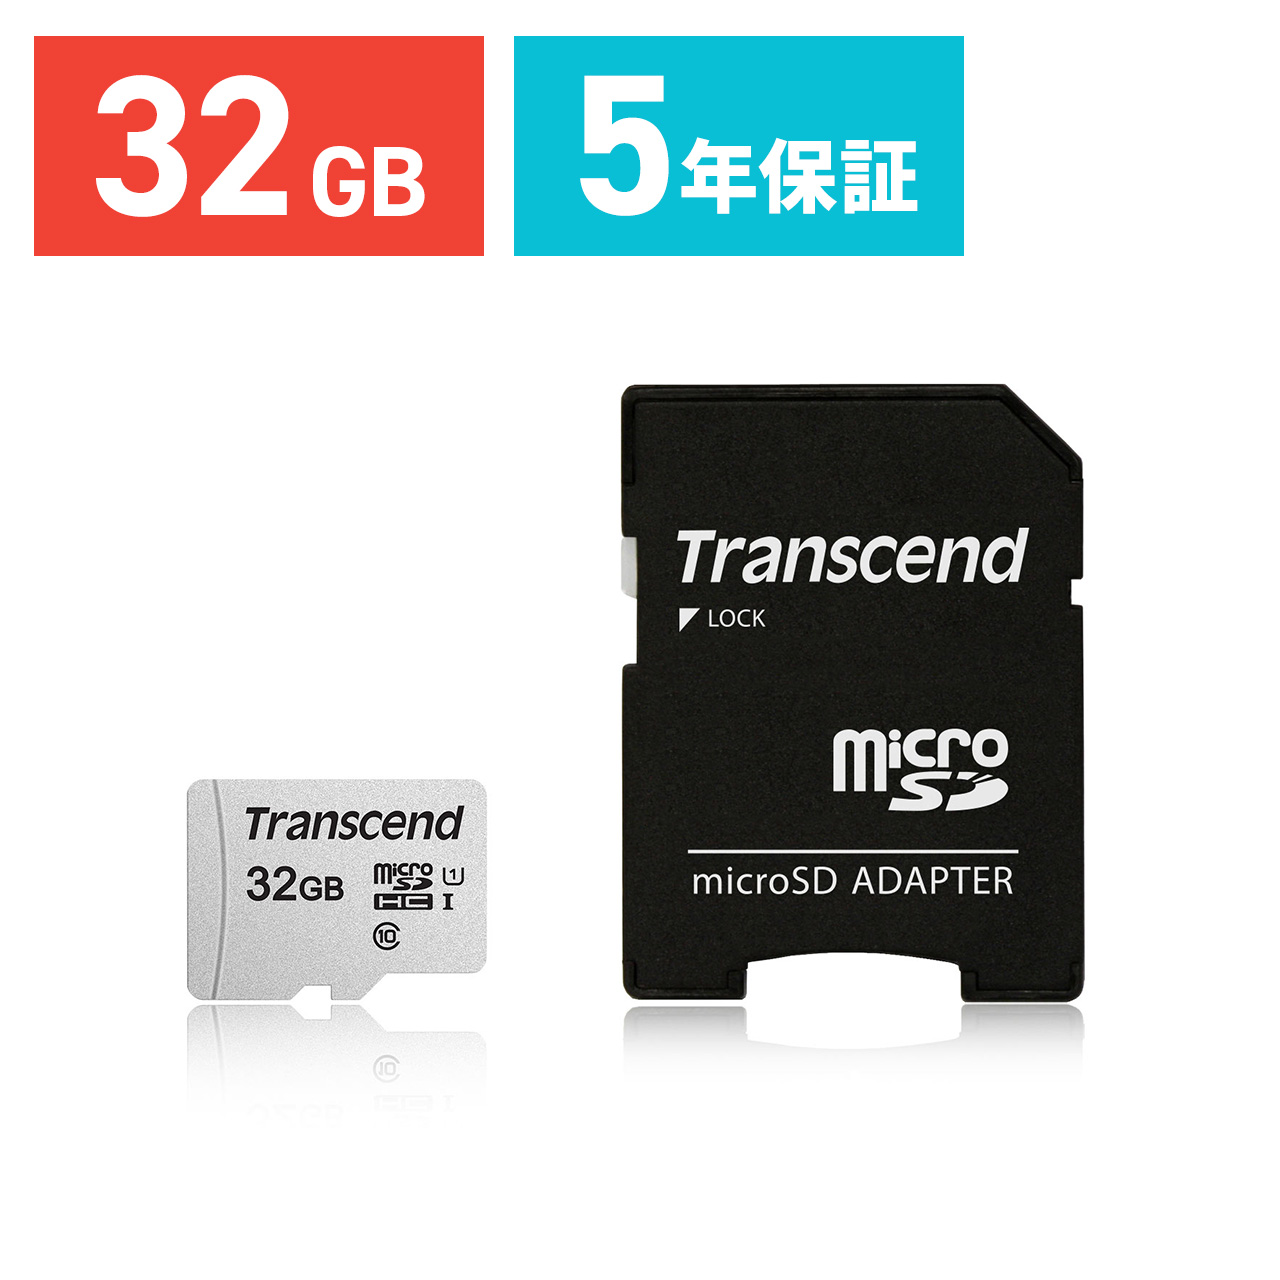 【メモリセール】microSDHCカード 32GB Class10 UHS-I U1 SD変換アダプタ付き Nintendo Switch対応 Transcend製 TS32GUSD300S-A